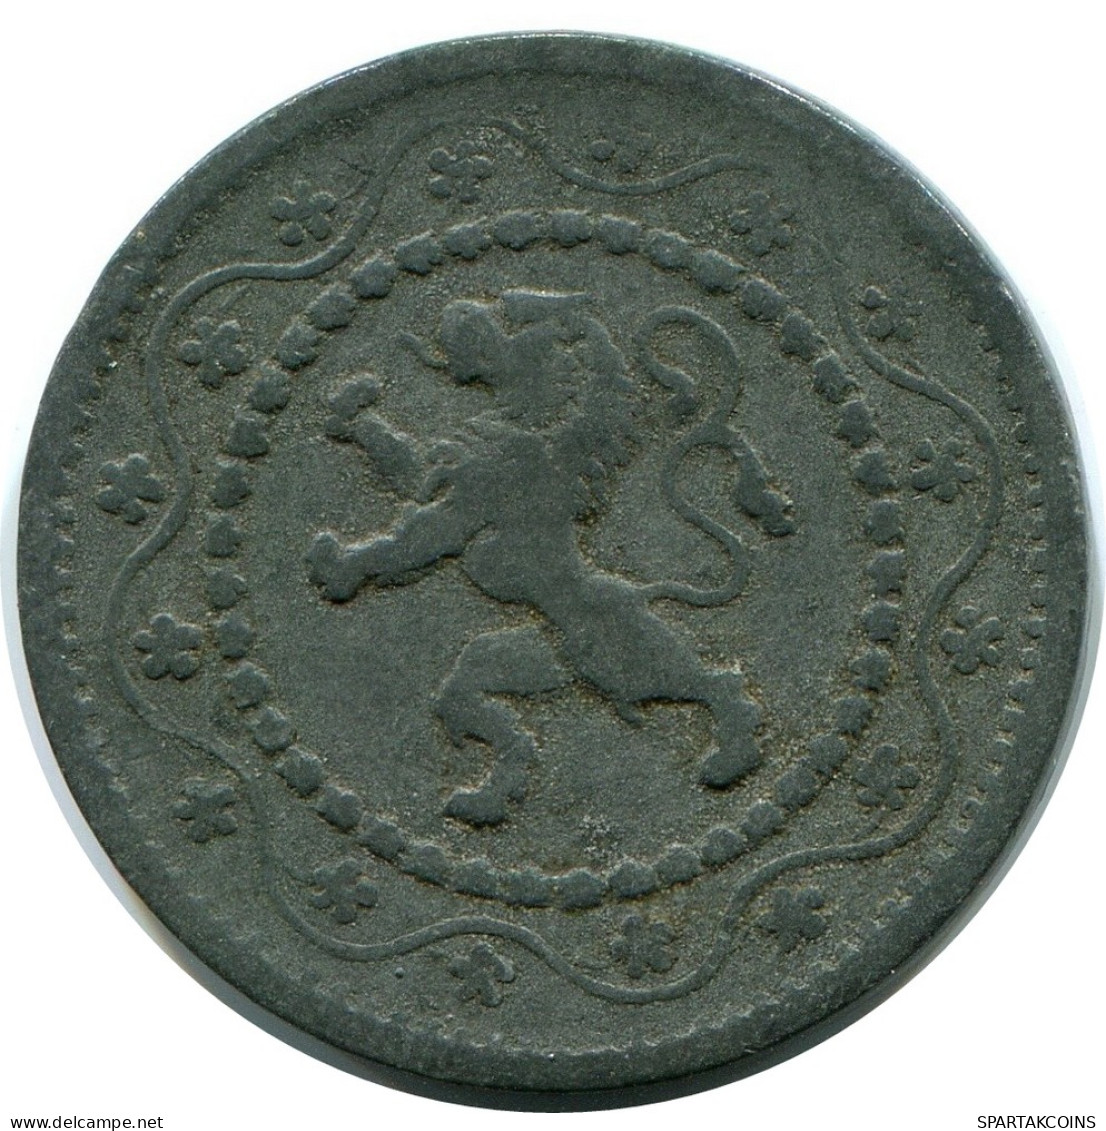 10 CENTIMES 1915 DUTCH Text BELGIUM Coin #BA412.U - 10 Centimes